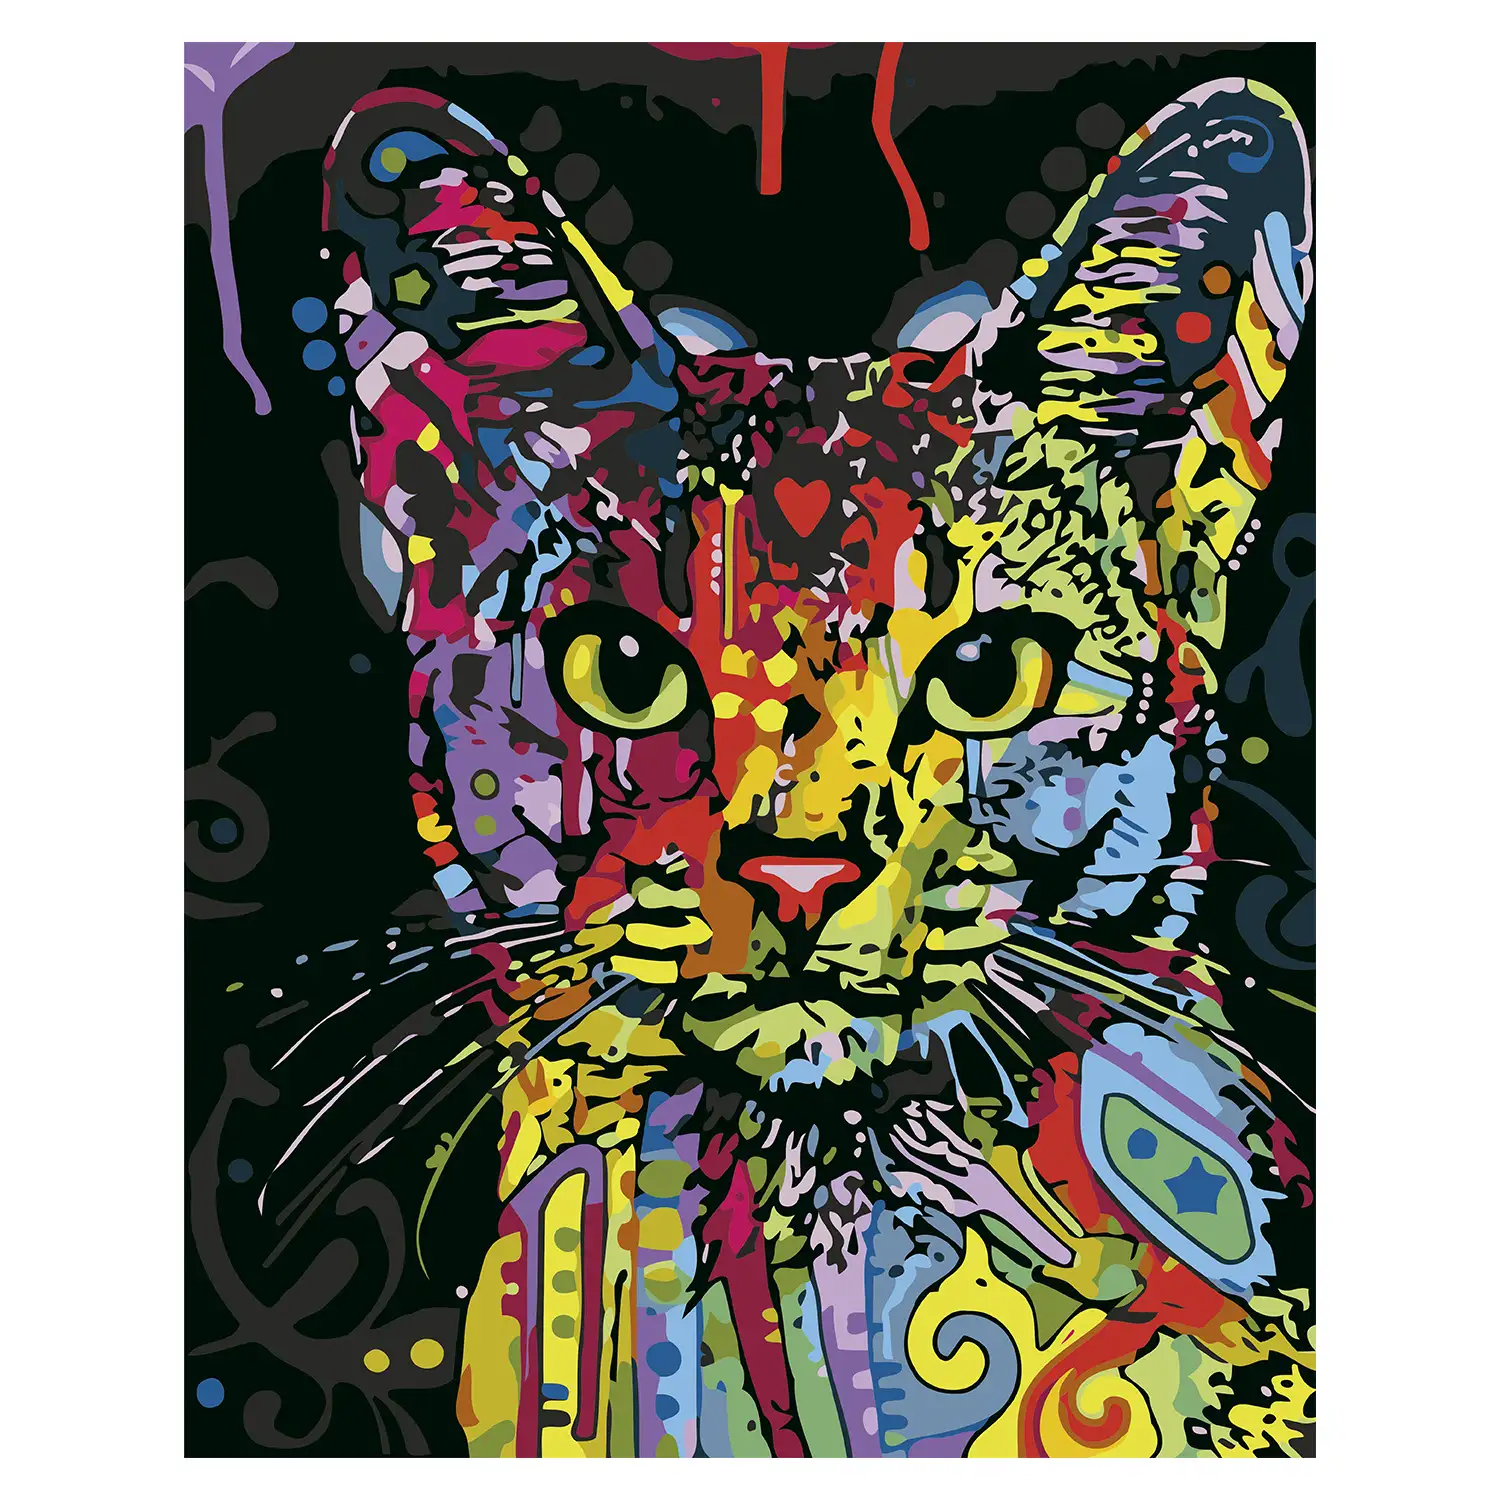 Lienzo con dibujo para pintar con números, de 40x50cm. Diseño gato  abstracto. Incluye pinceles y pinturas